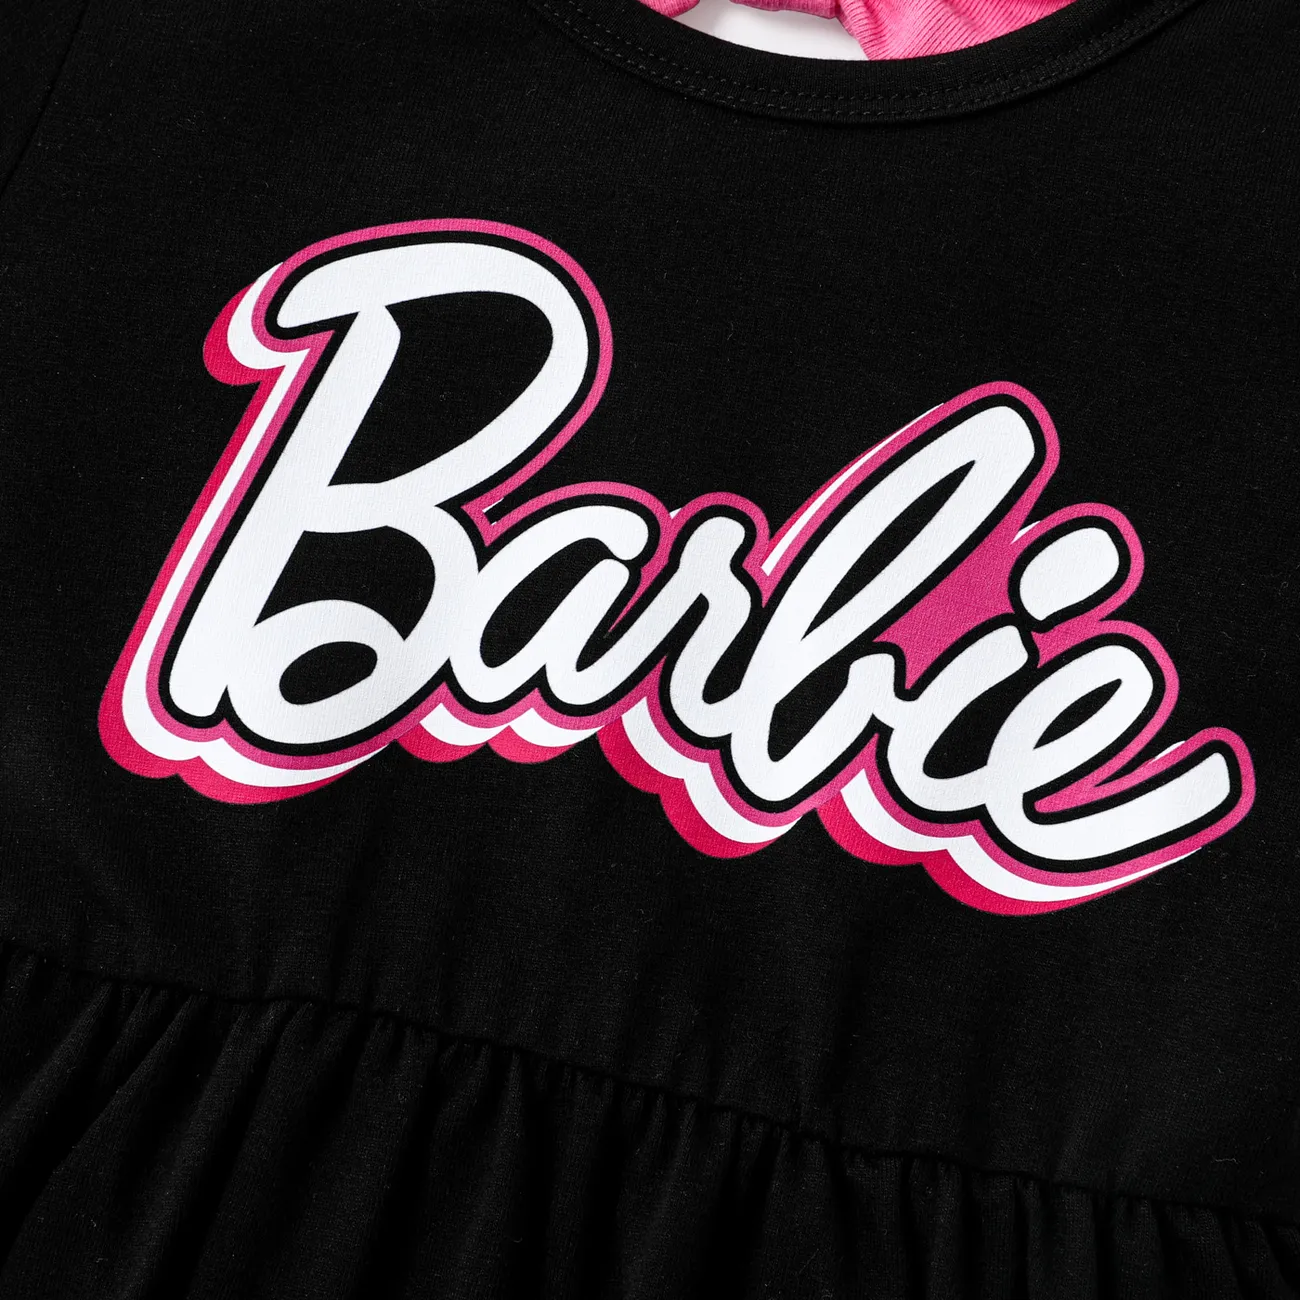 Barbie IP Fille Entortillé Doux Robes Noir big image 1